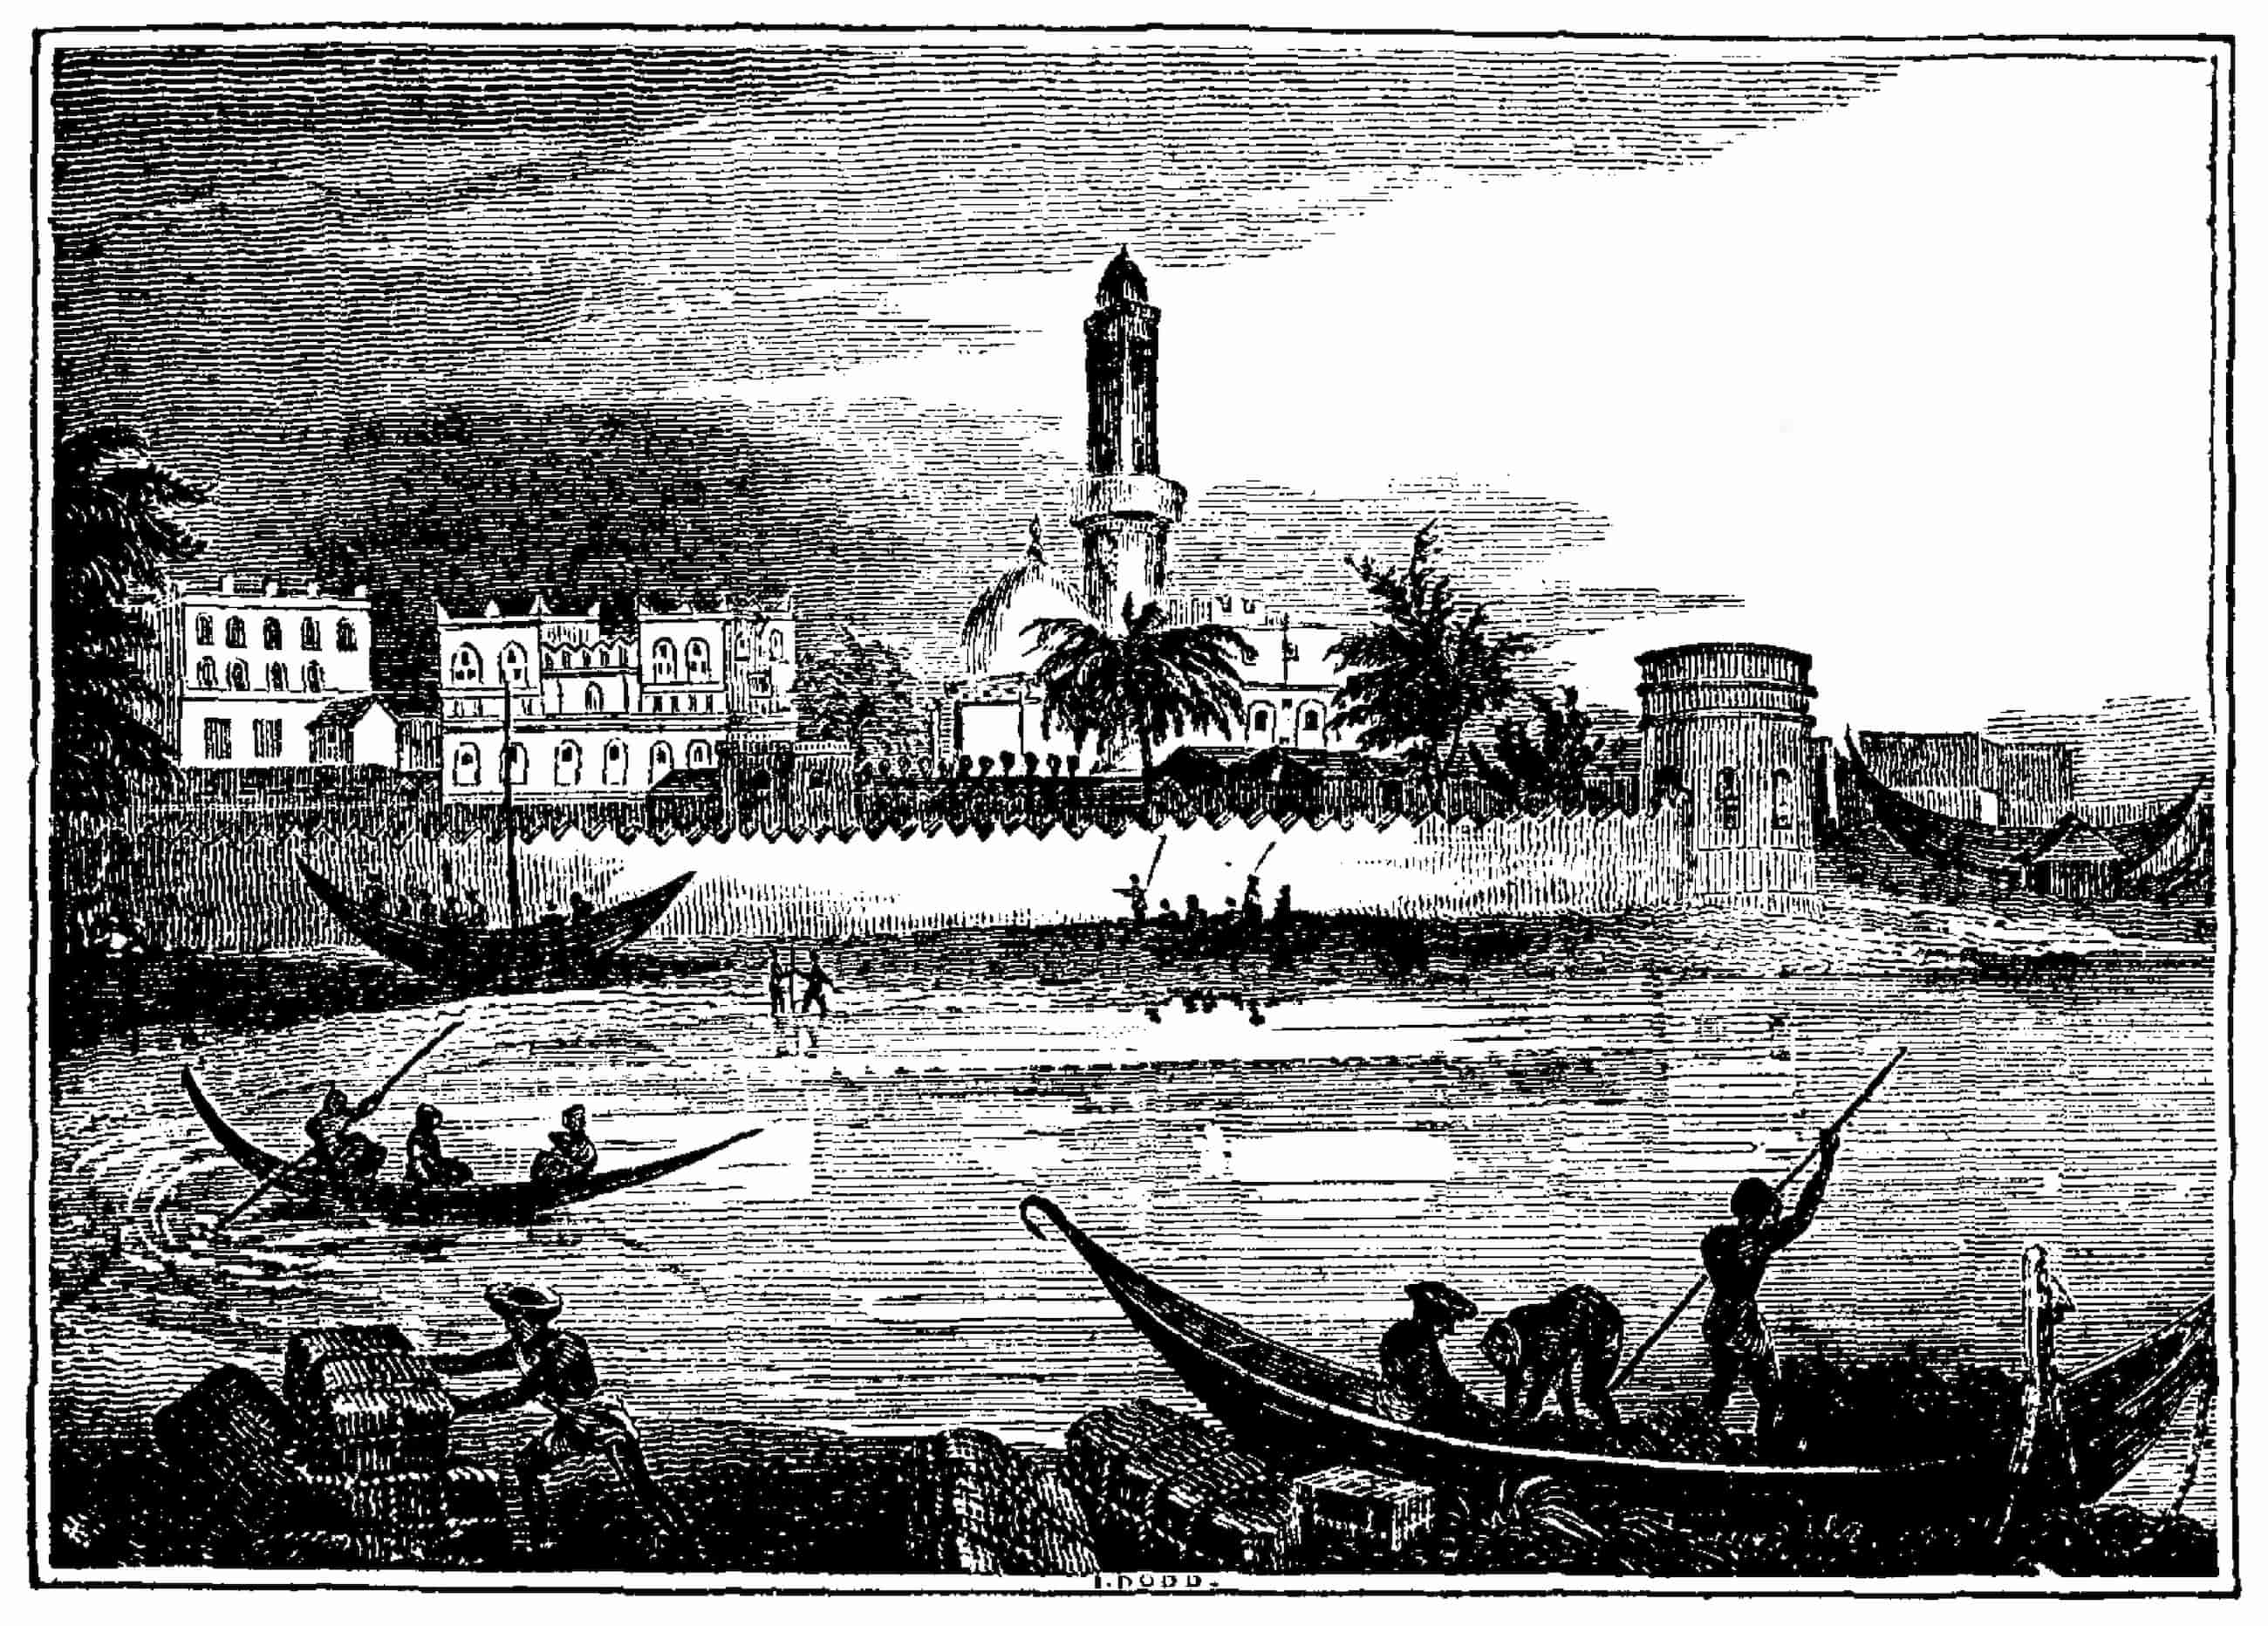 Une illustration du port de Moka, de petits bateaux se déplacent dans l'eau devant une colonie fortifiée.